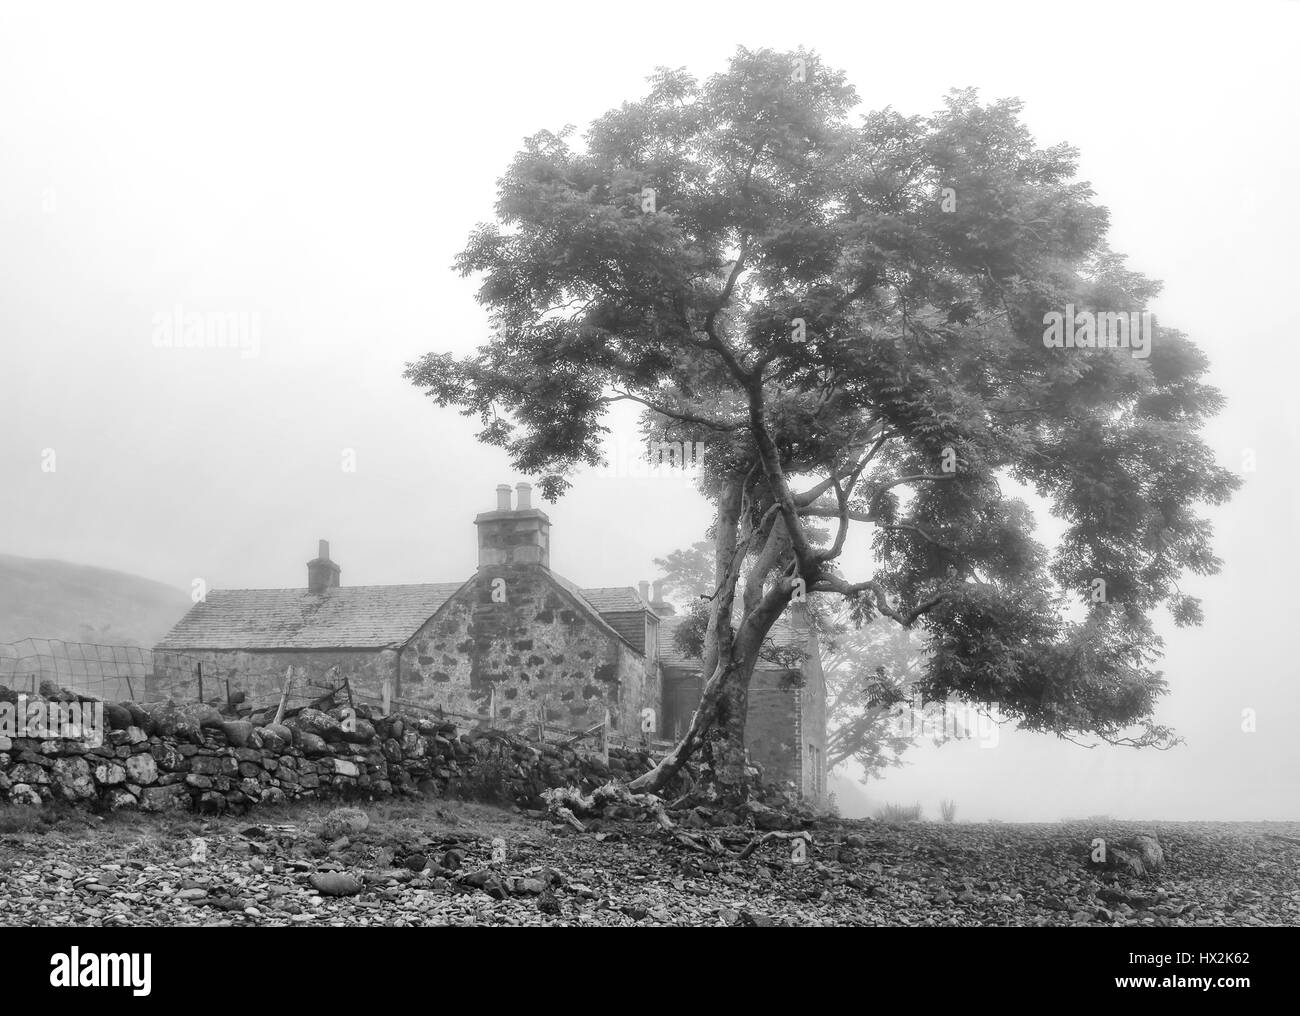 Vieux Chalet vide en noir-blanc avec l'arbre au-dessus d'elle, Isle of Mull, Scotland Banque D'Images